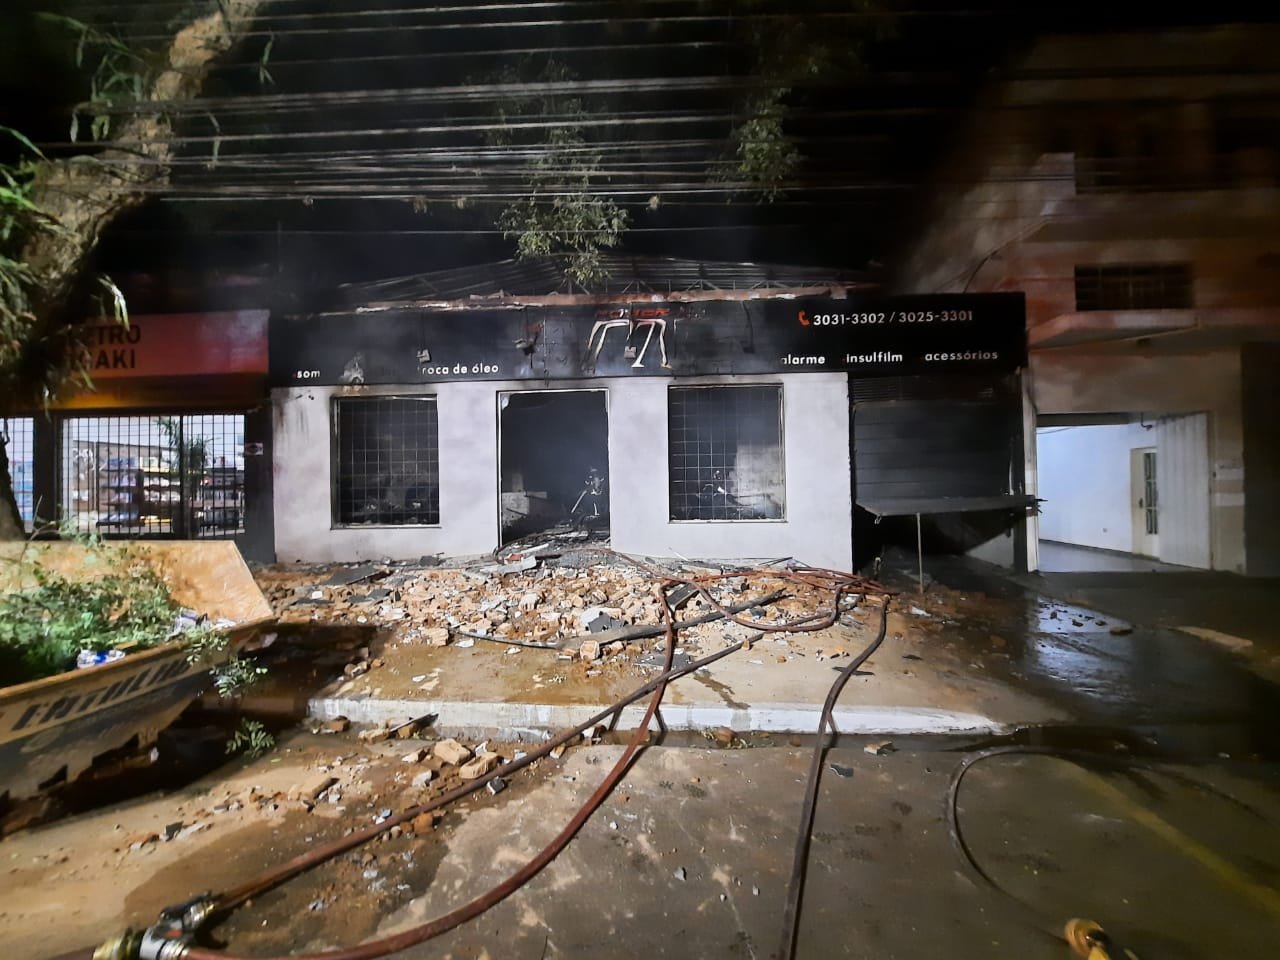 Oficina foi destruída pelo fogo na noite desta sexta (10) em Maringá - Foto: Divulgação / Bombeiros